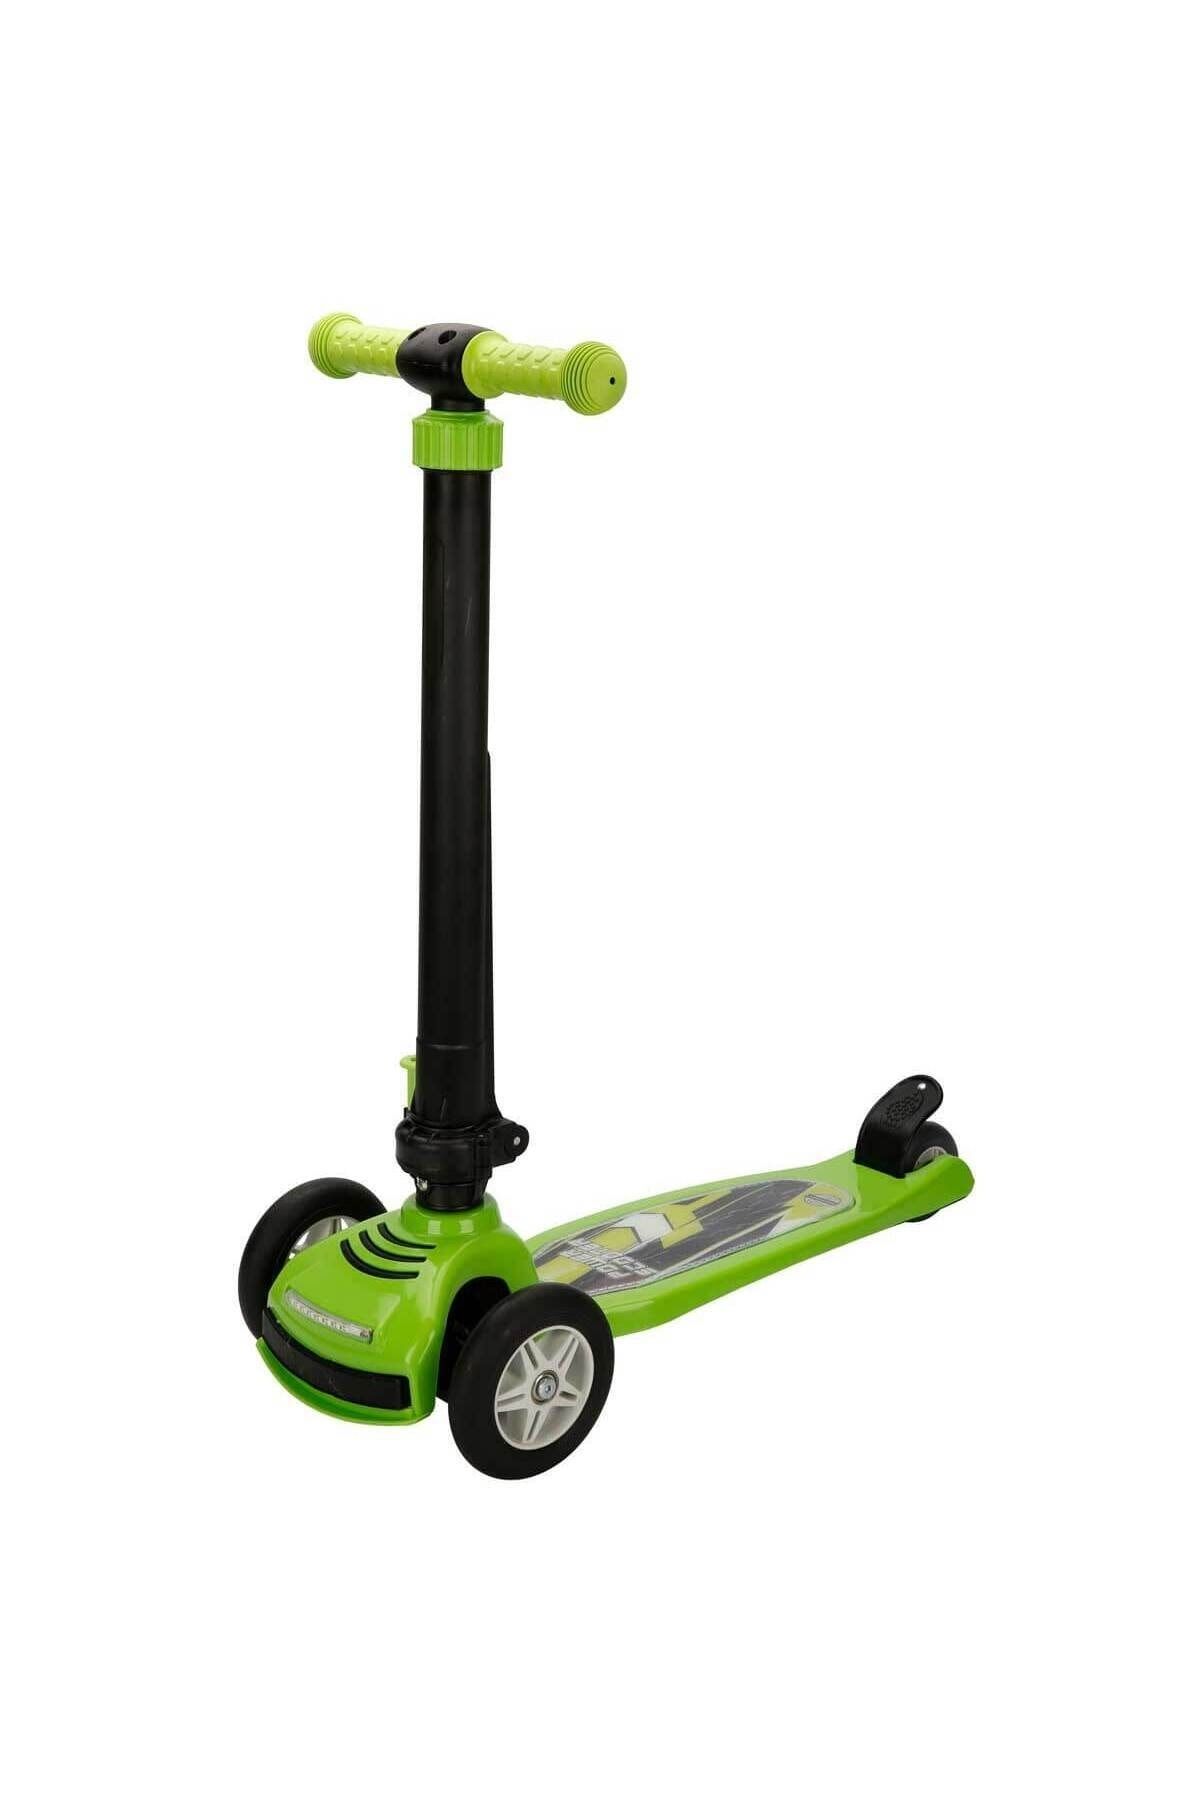 PİLSAN Power 3 Tekerlekli Katlanabilir Işıklı Yeşil Scooter